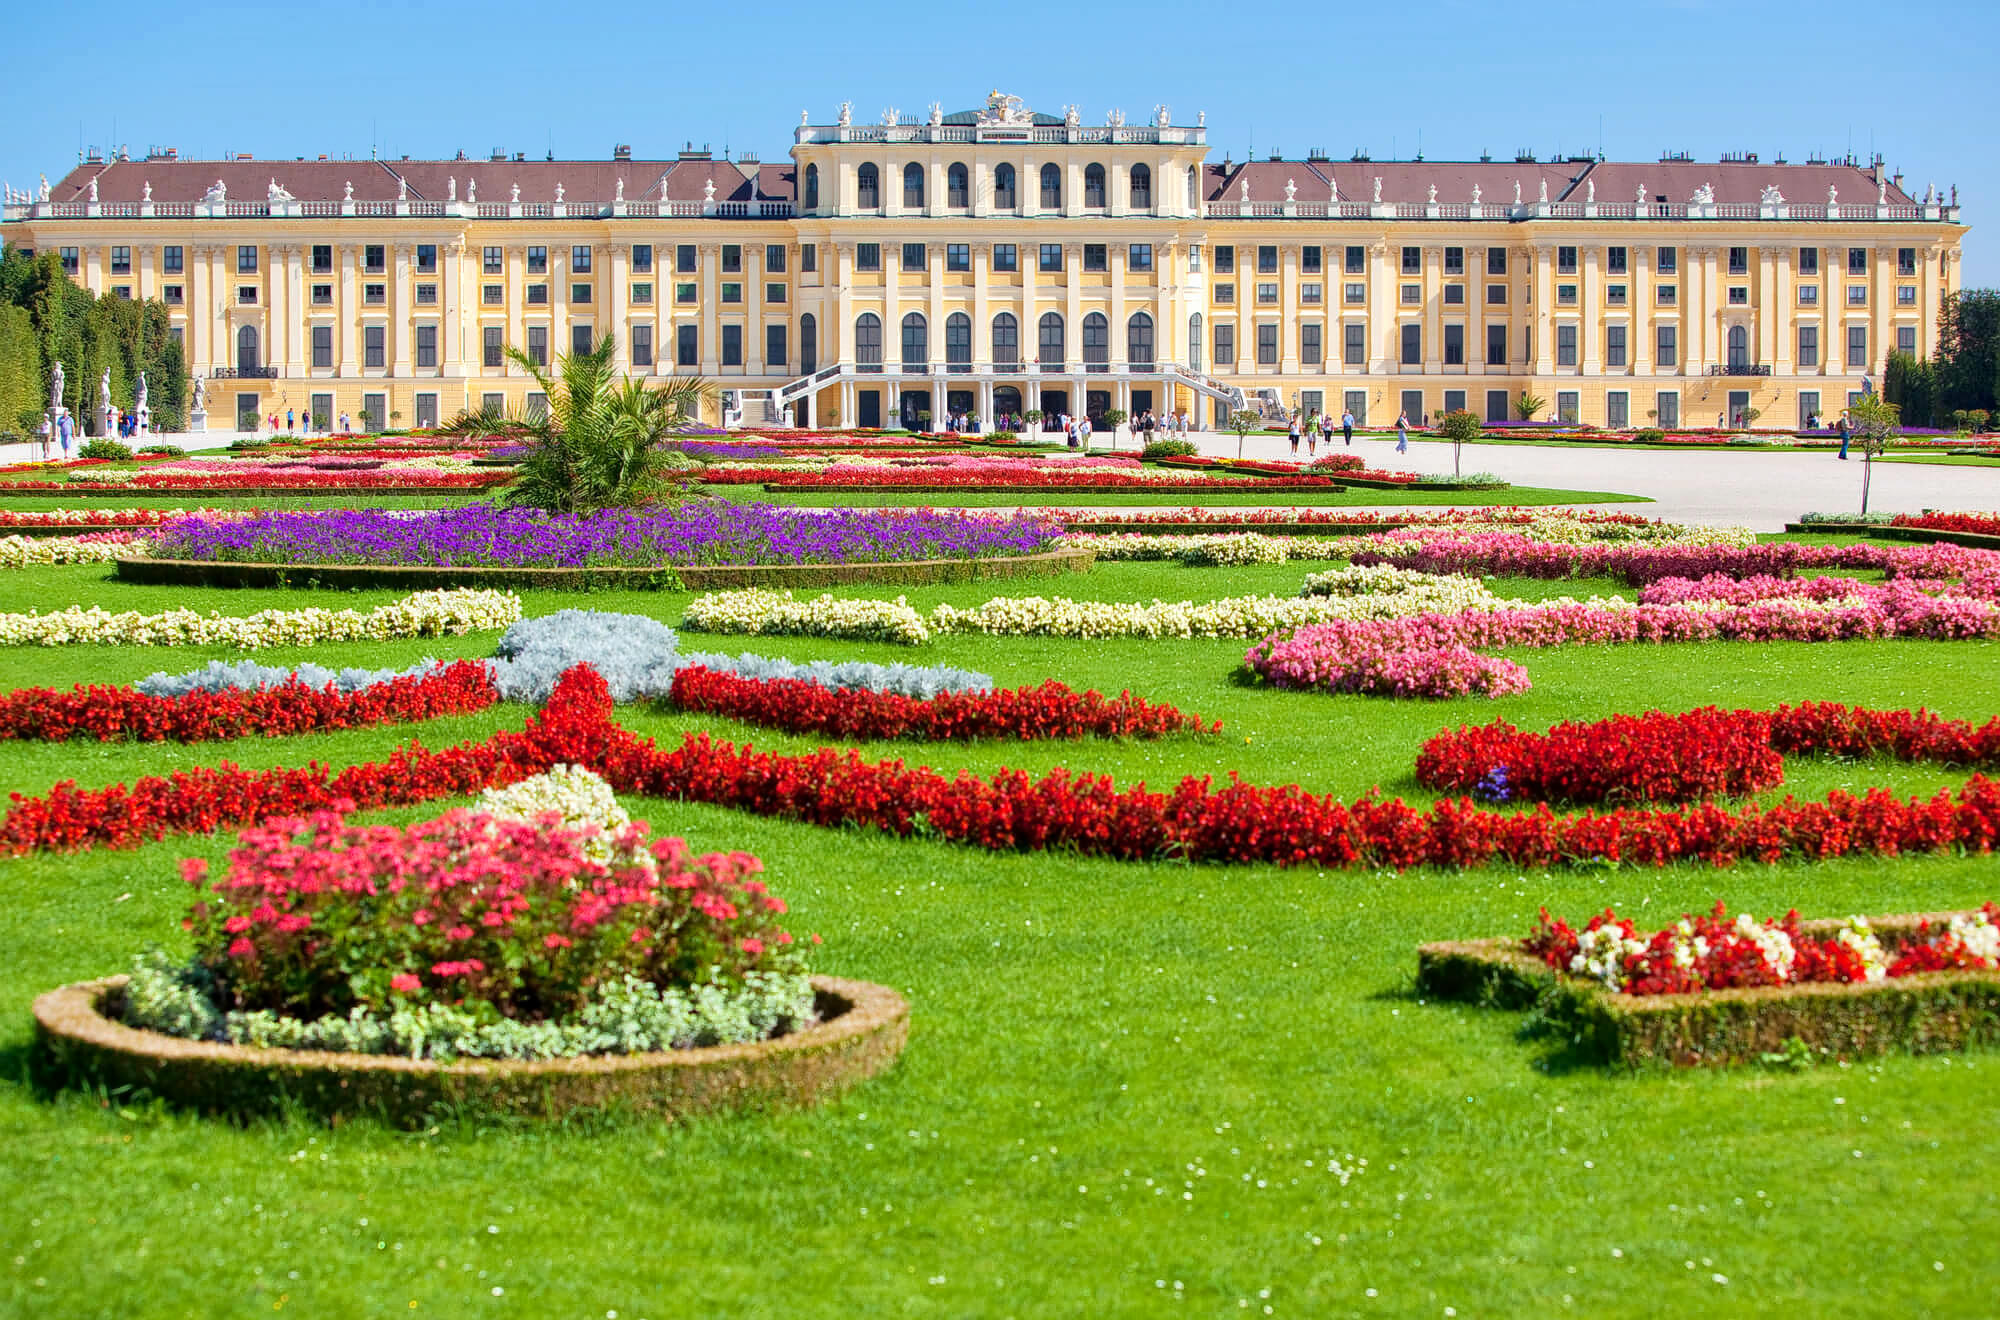 Schönbrunn Palace And Gardens Overview